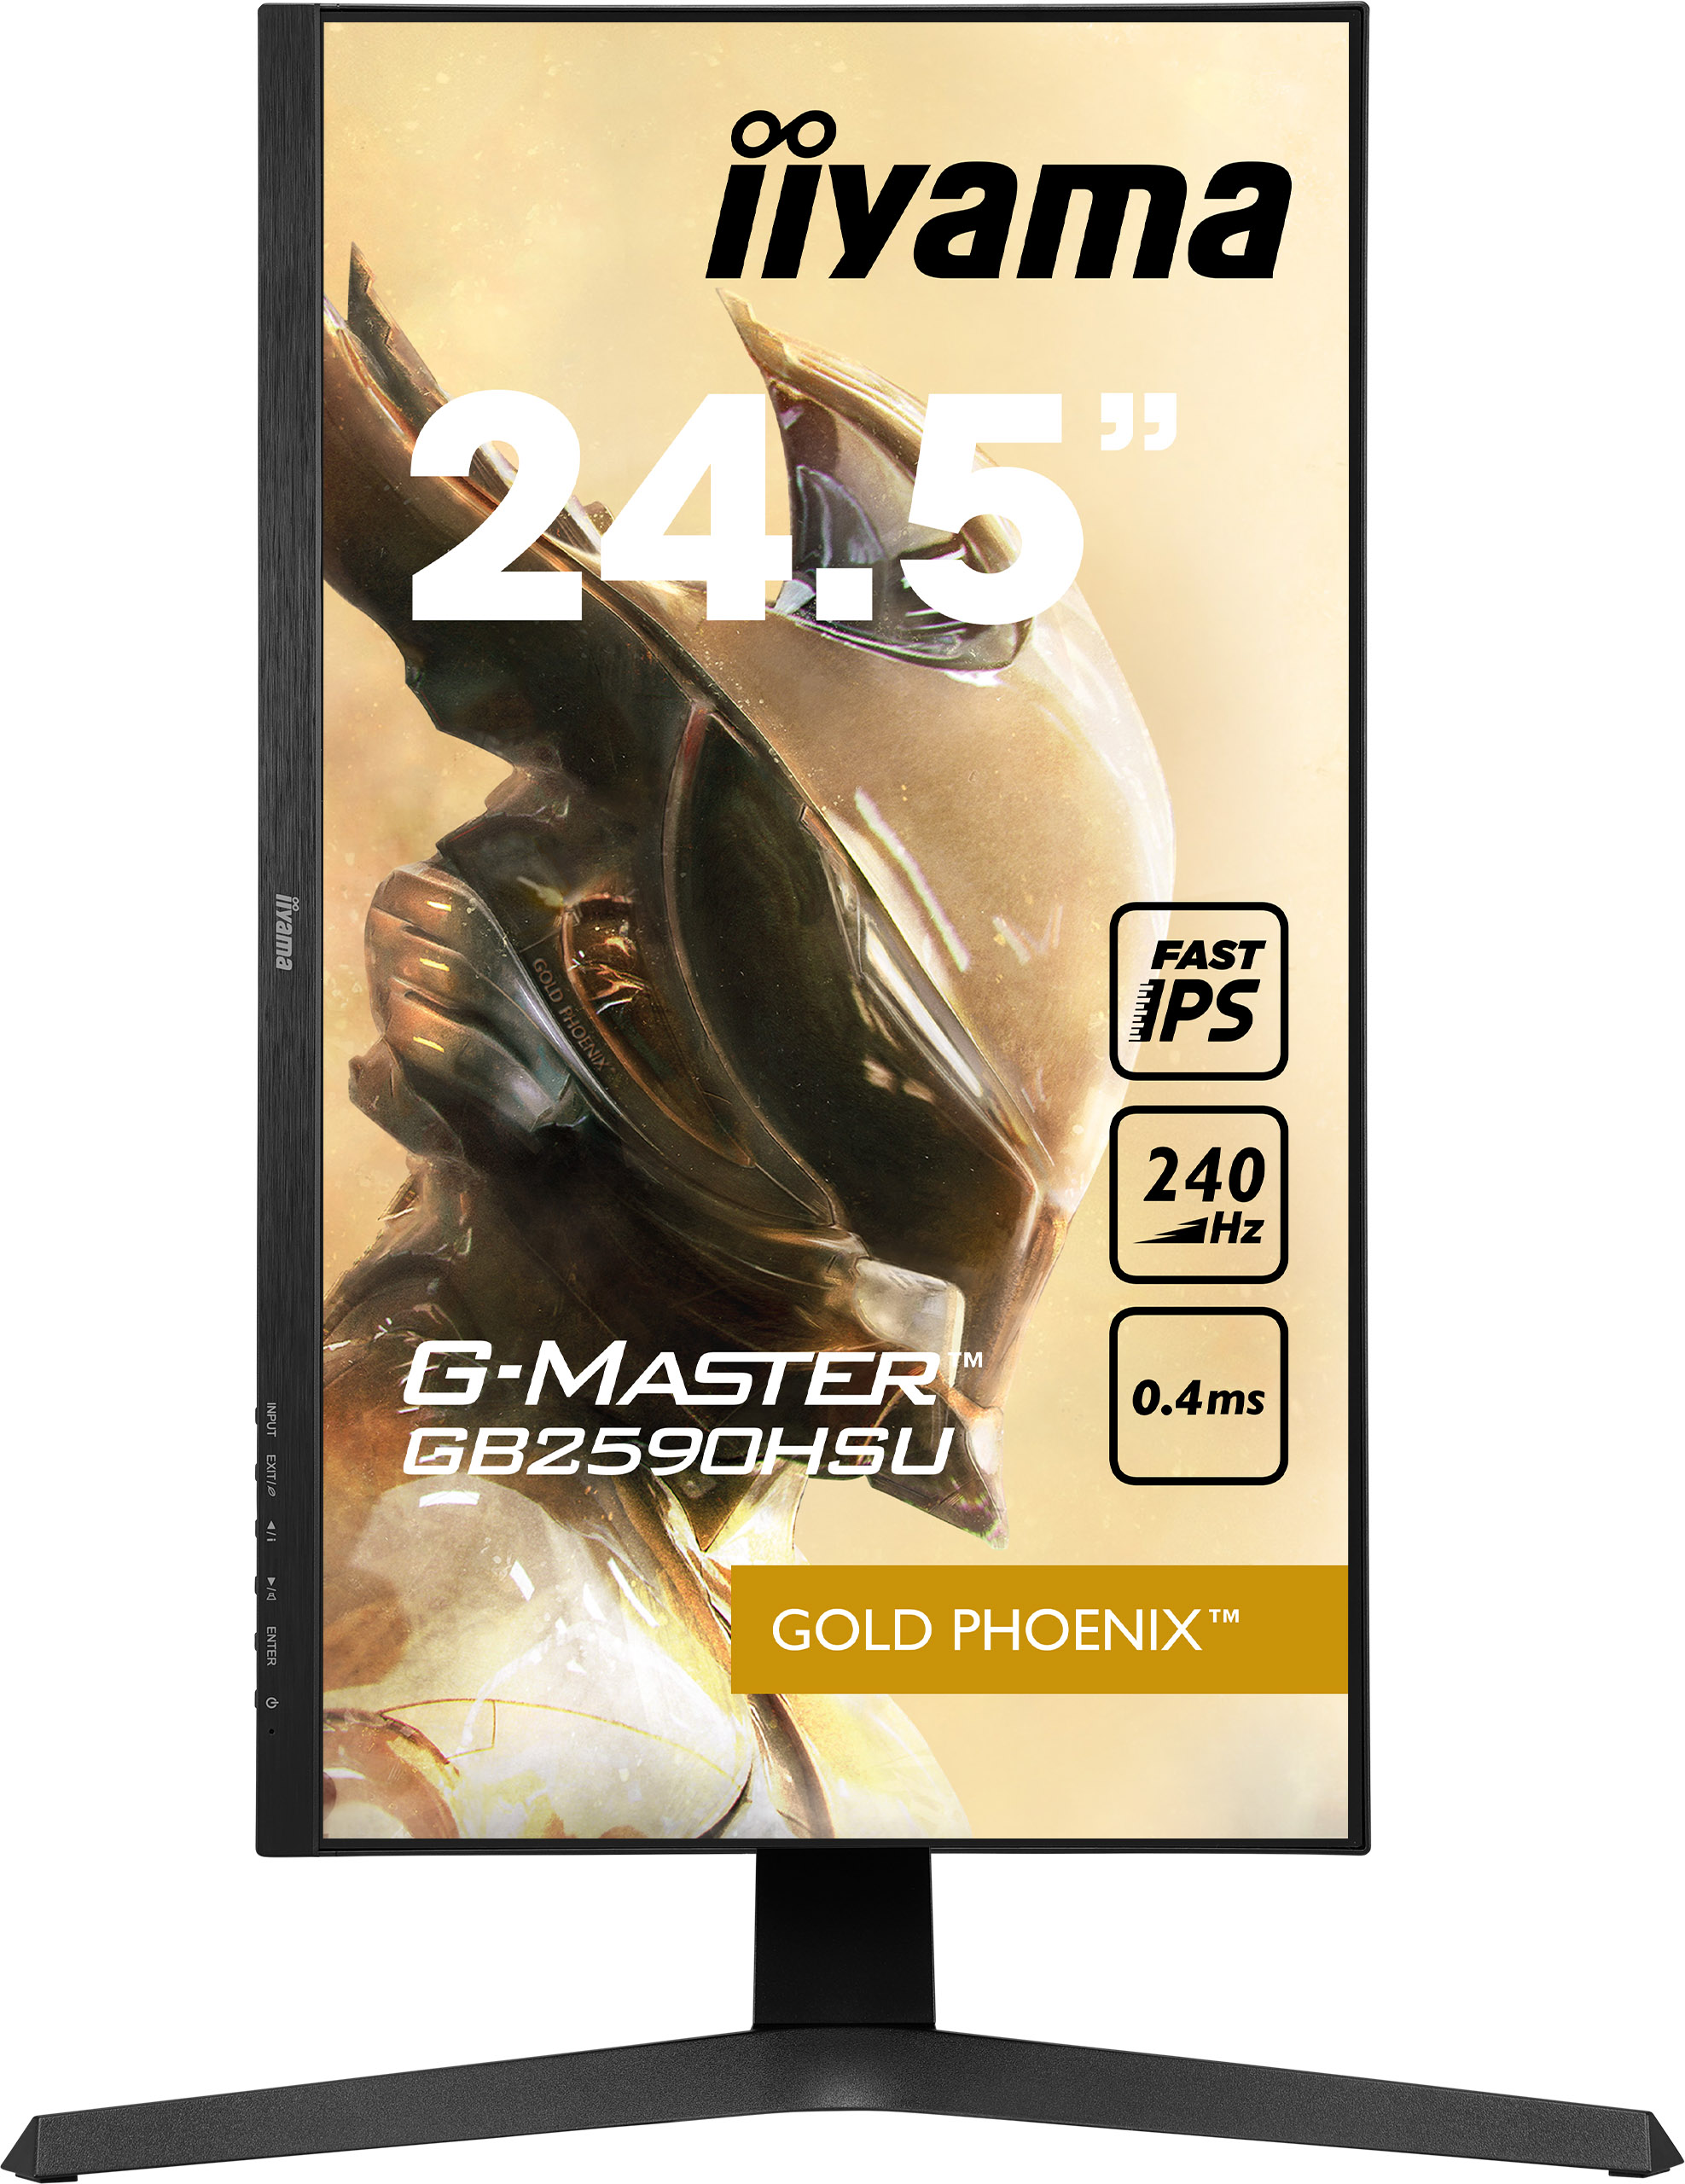 Iiyama G-MASTER GB2590HSU-B1 GOLD PHOENIX | 24,5" | 240Hz | Gaming Monitor